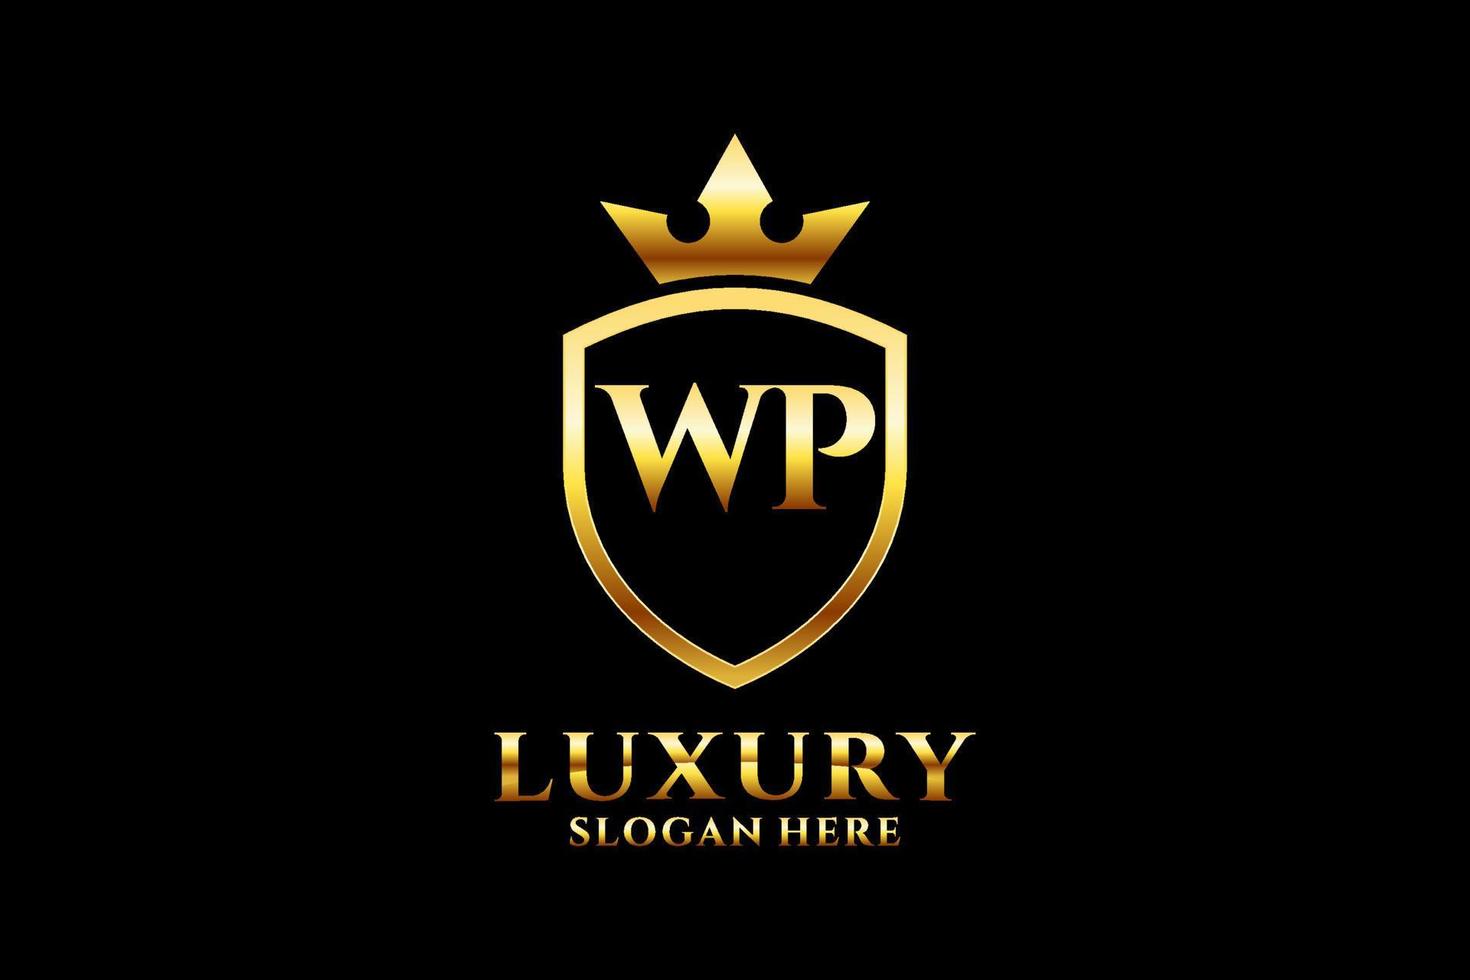 första wp elegant lyx monogram logotyp eller bricka mall med rullar och kunglig krona - perfekt för lyxig branding projekt vektor